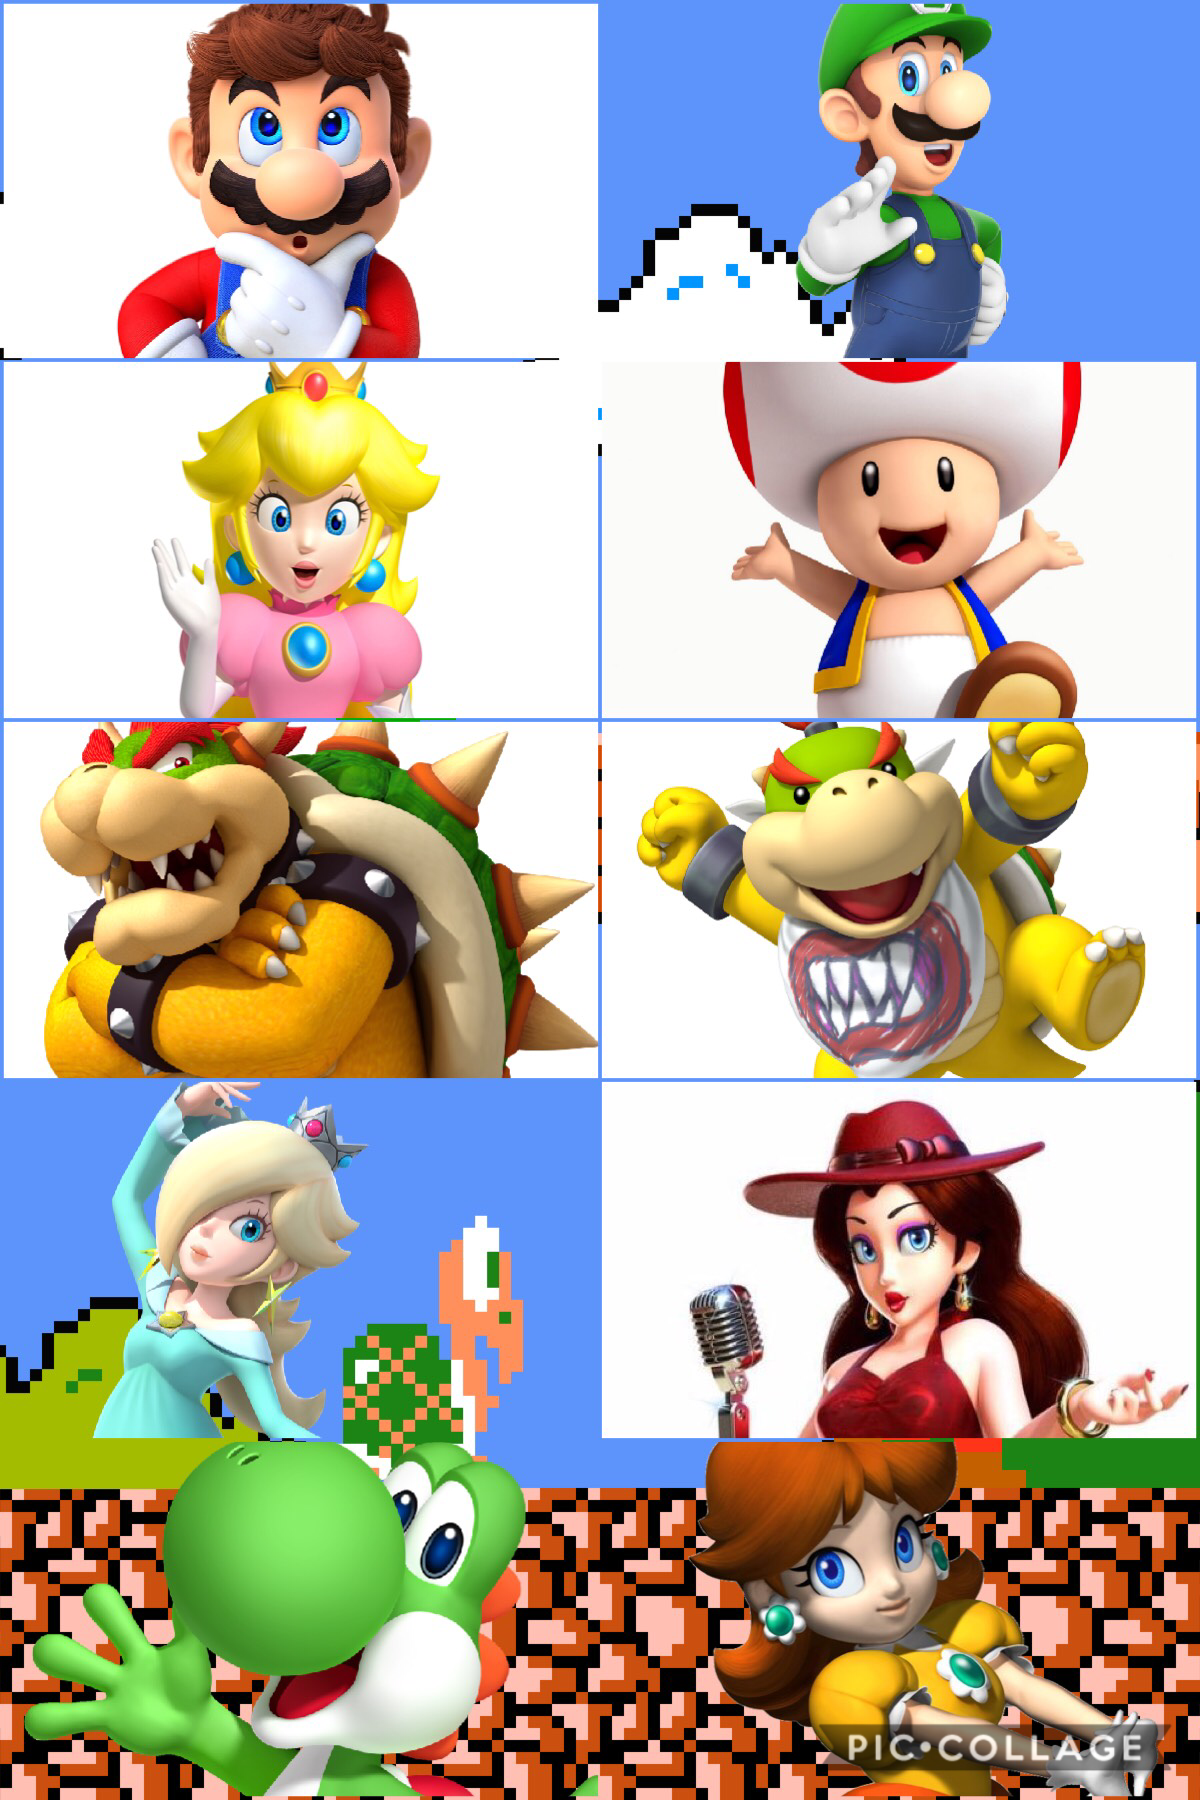 It’s a me Mario!!